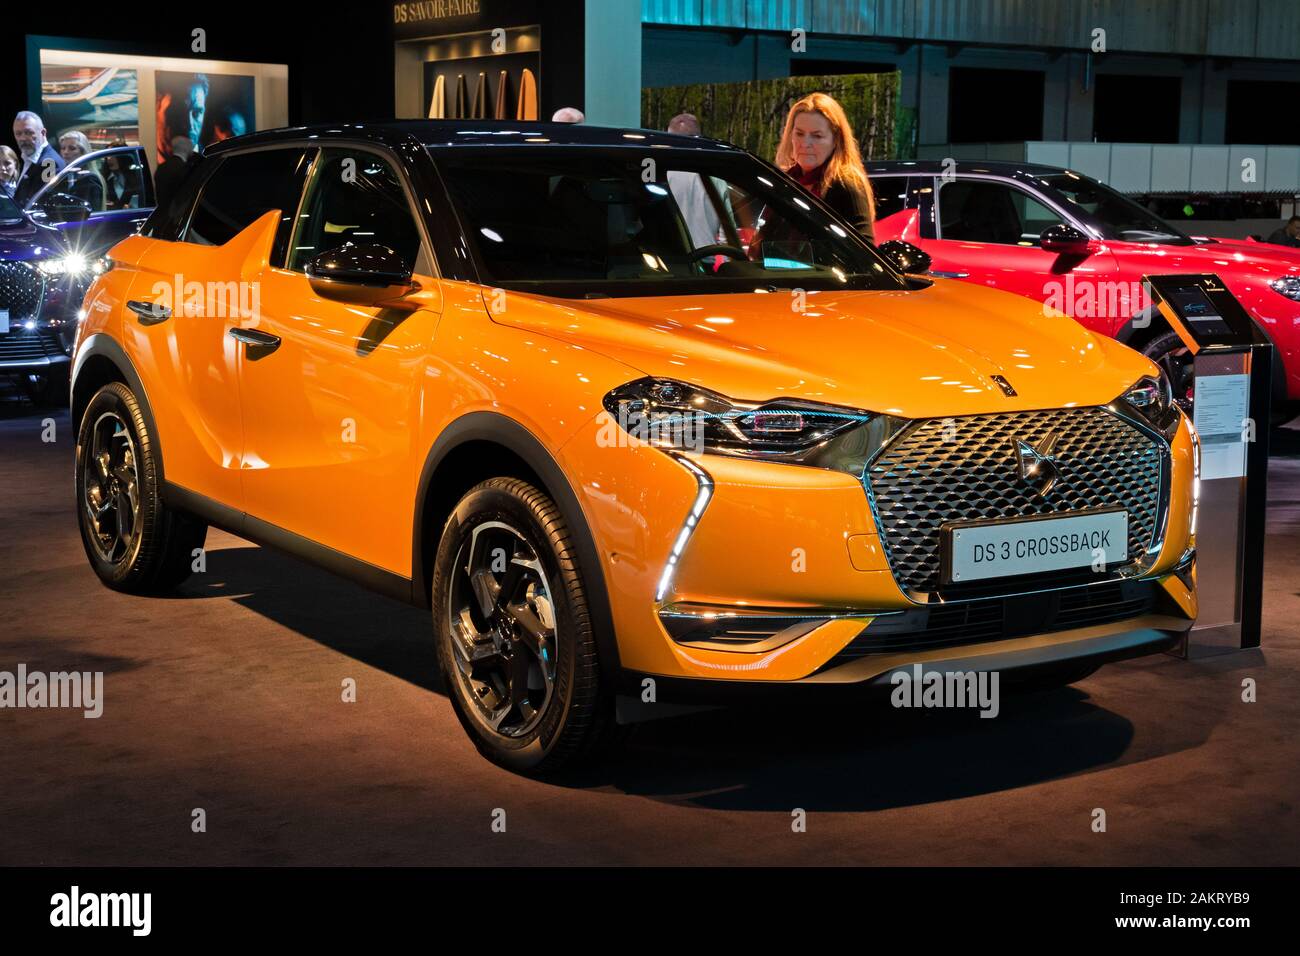 Bruxelles - JAN 9, 2020 : nouvelle DS 3 voiture SUV compact de luxe Bond croisé arrière en vedette à l'Autosalon 2020 Bruxelles Salon de l'automobile. Banque D'Images